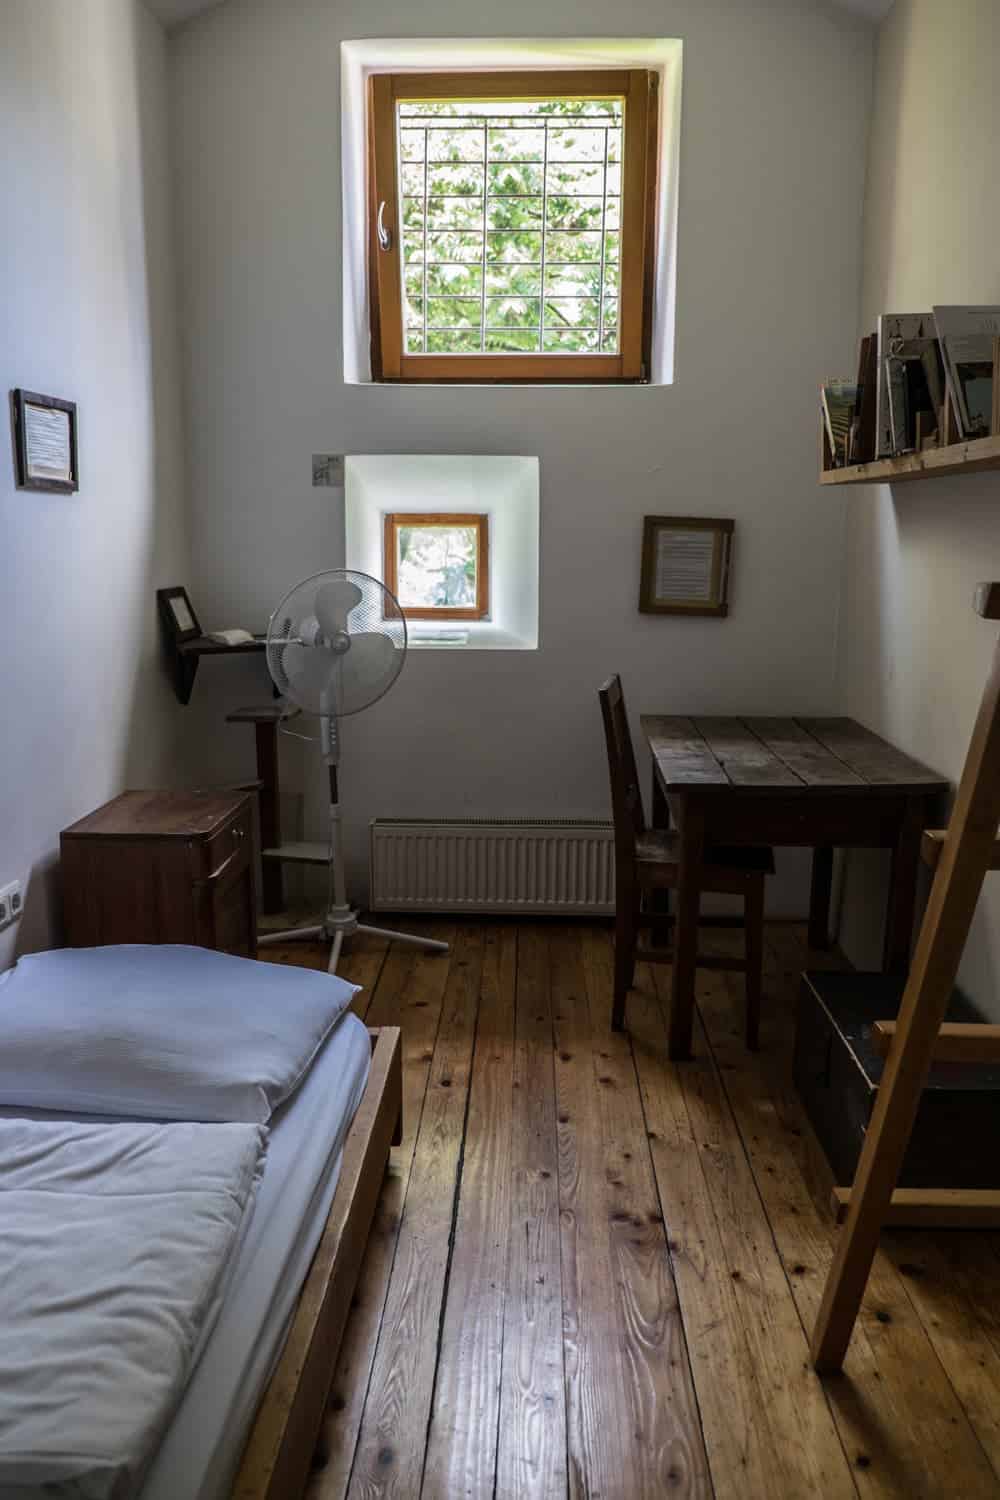 Inside the former prison turned hostel Celica in Metelkova, Ljubljana, Slovenia